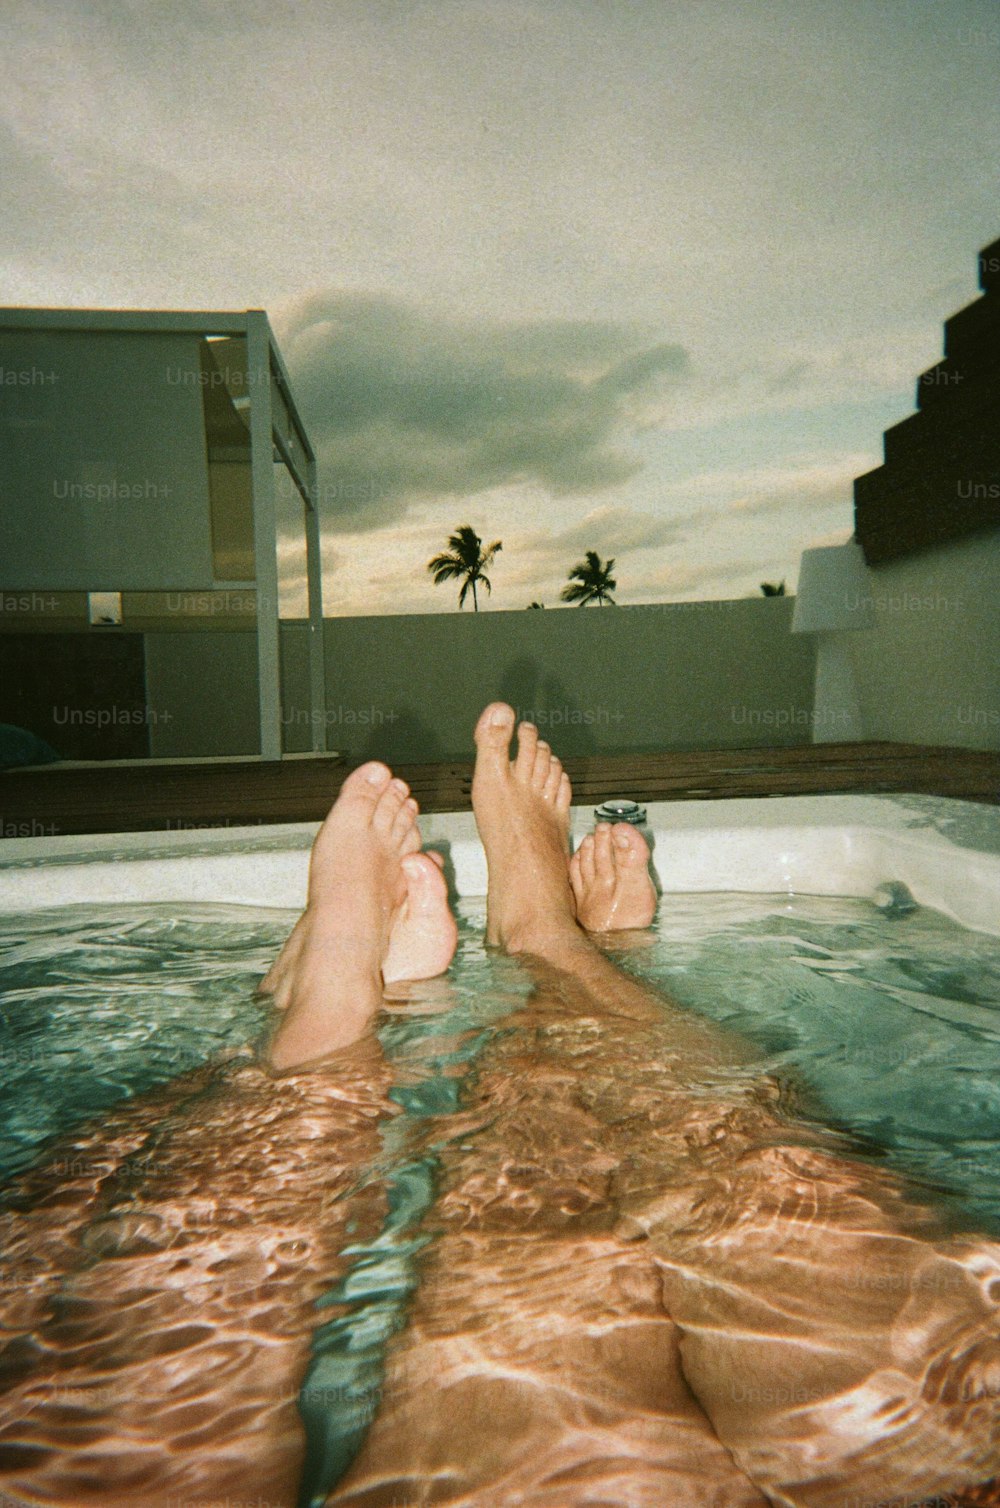 물에 발을 담그고 온수 욕조에 누워있는 사람